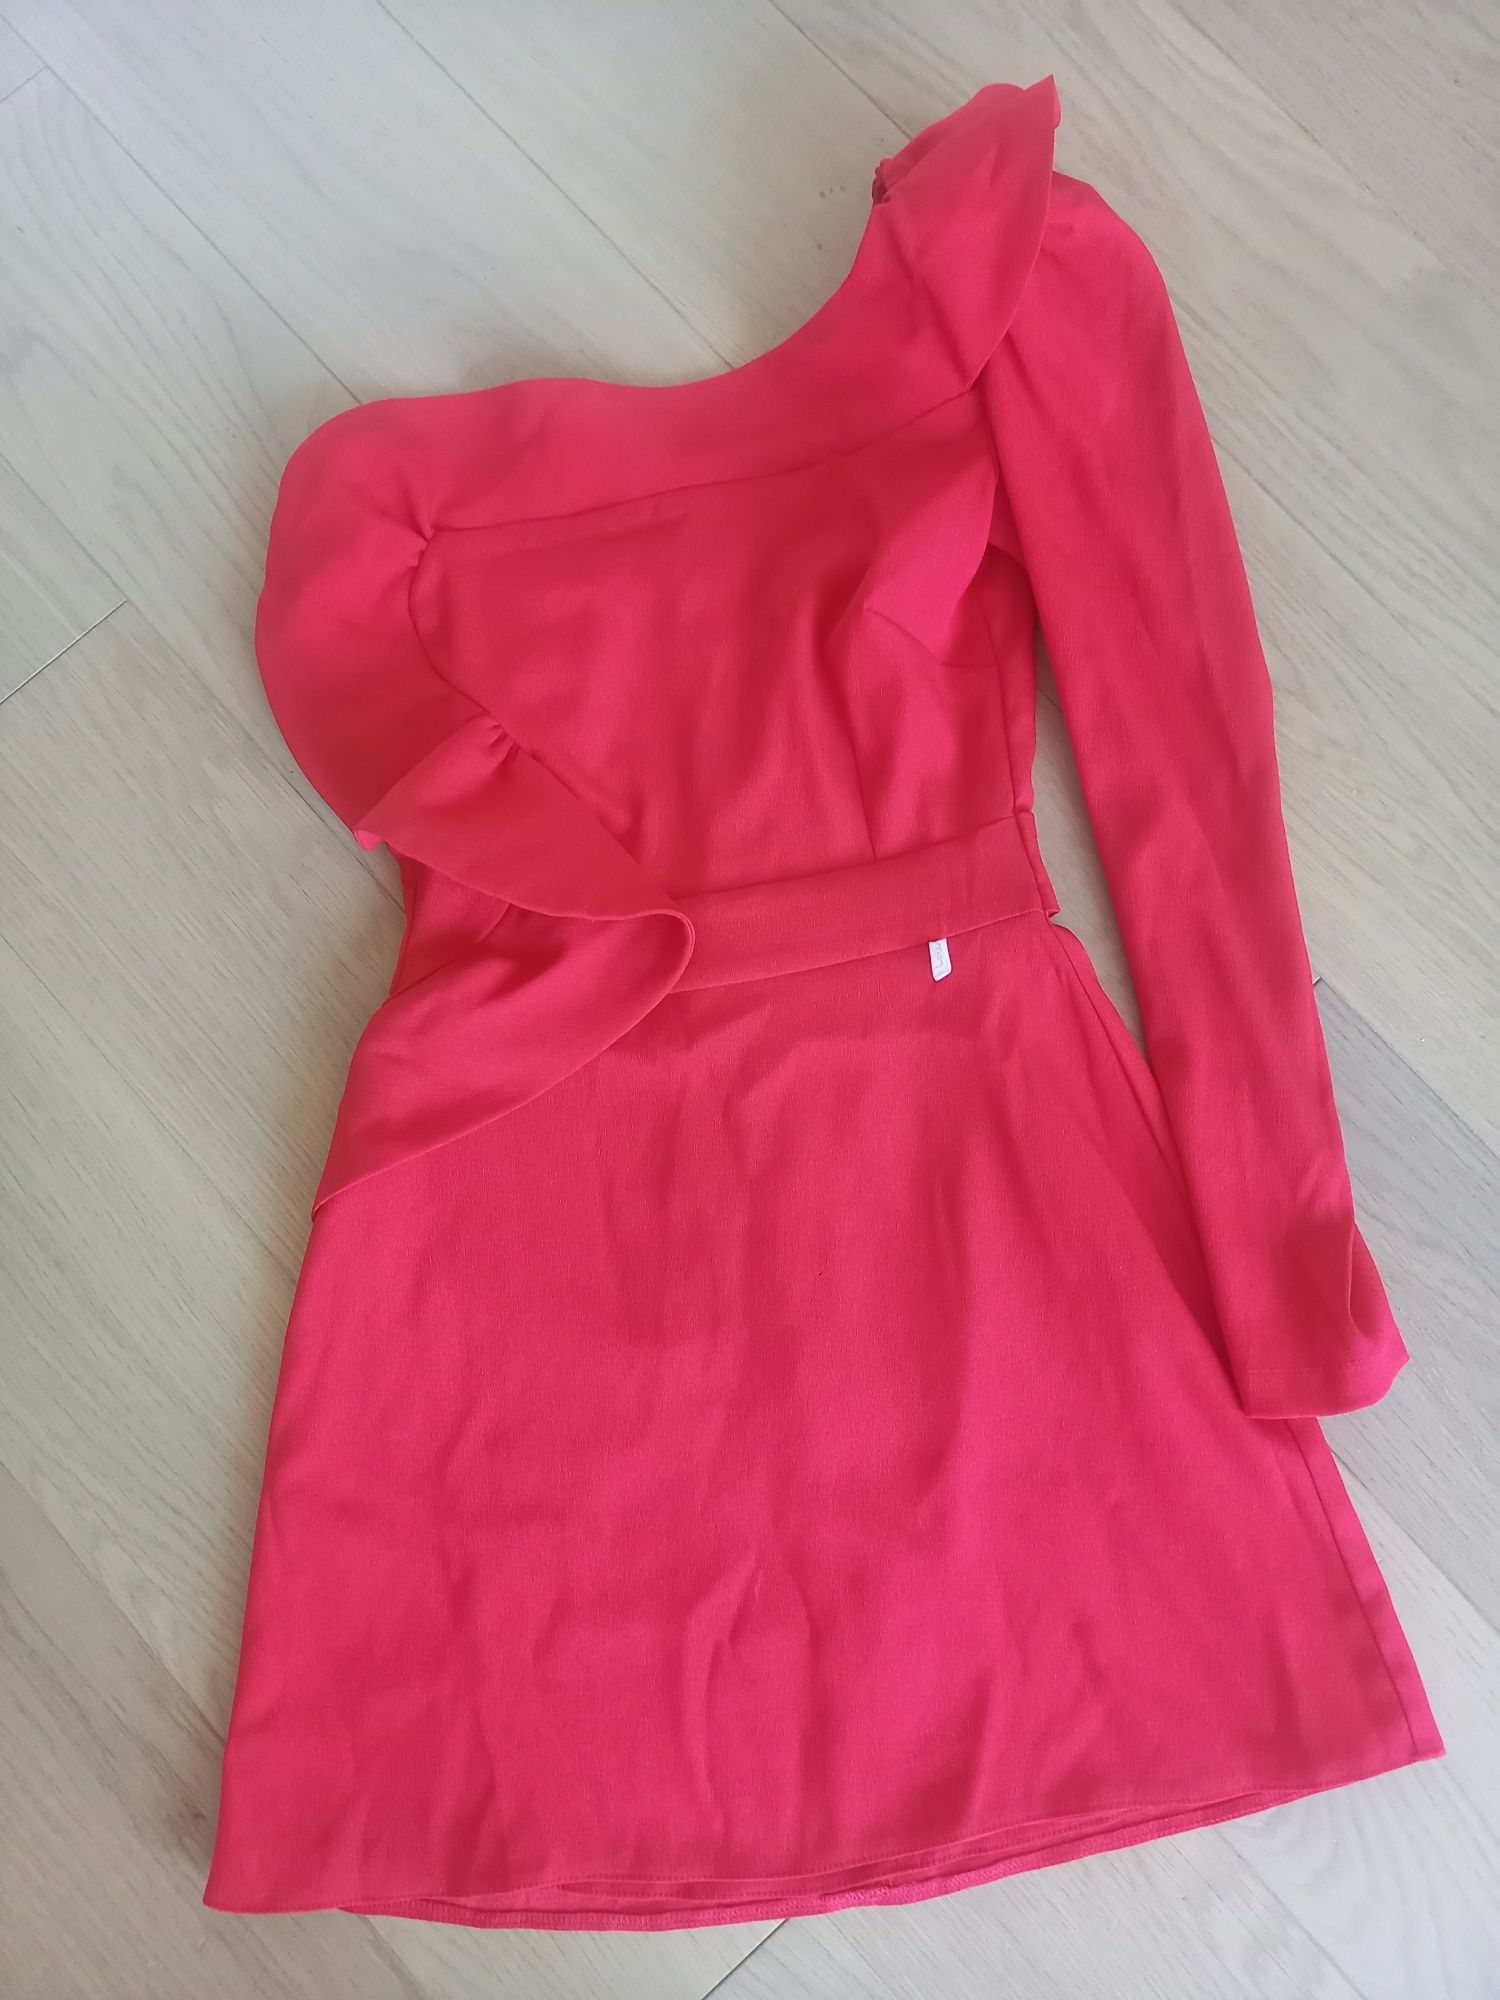 Sukienka Lou mini, czerwona, piękna. Rozm. 34